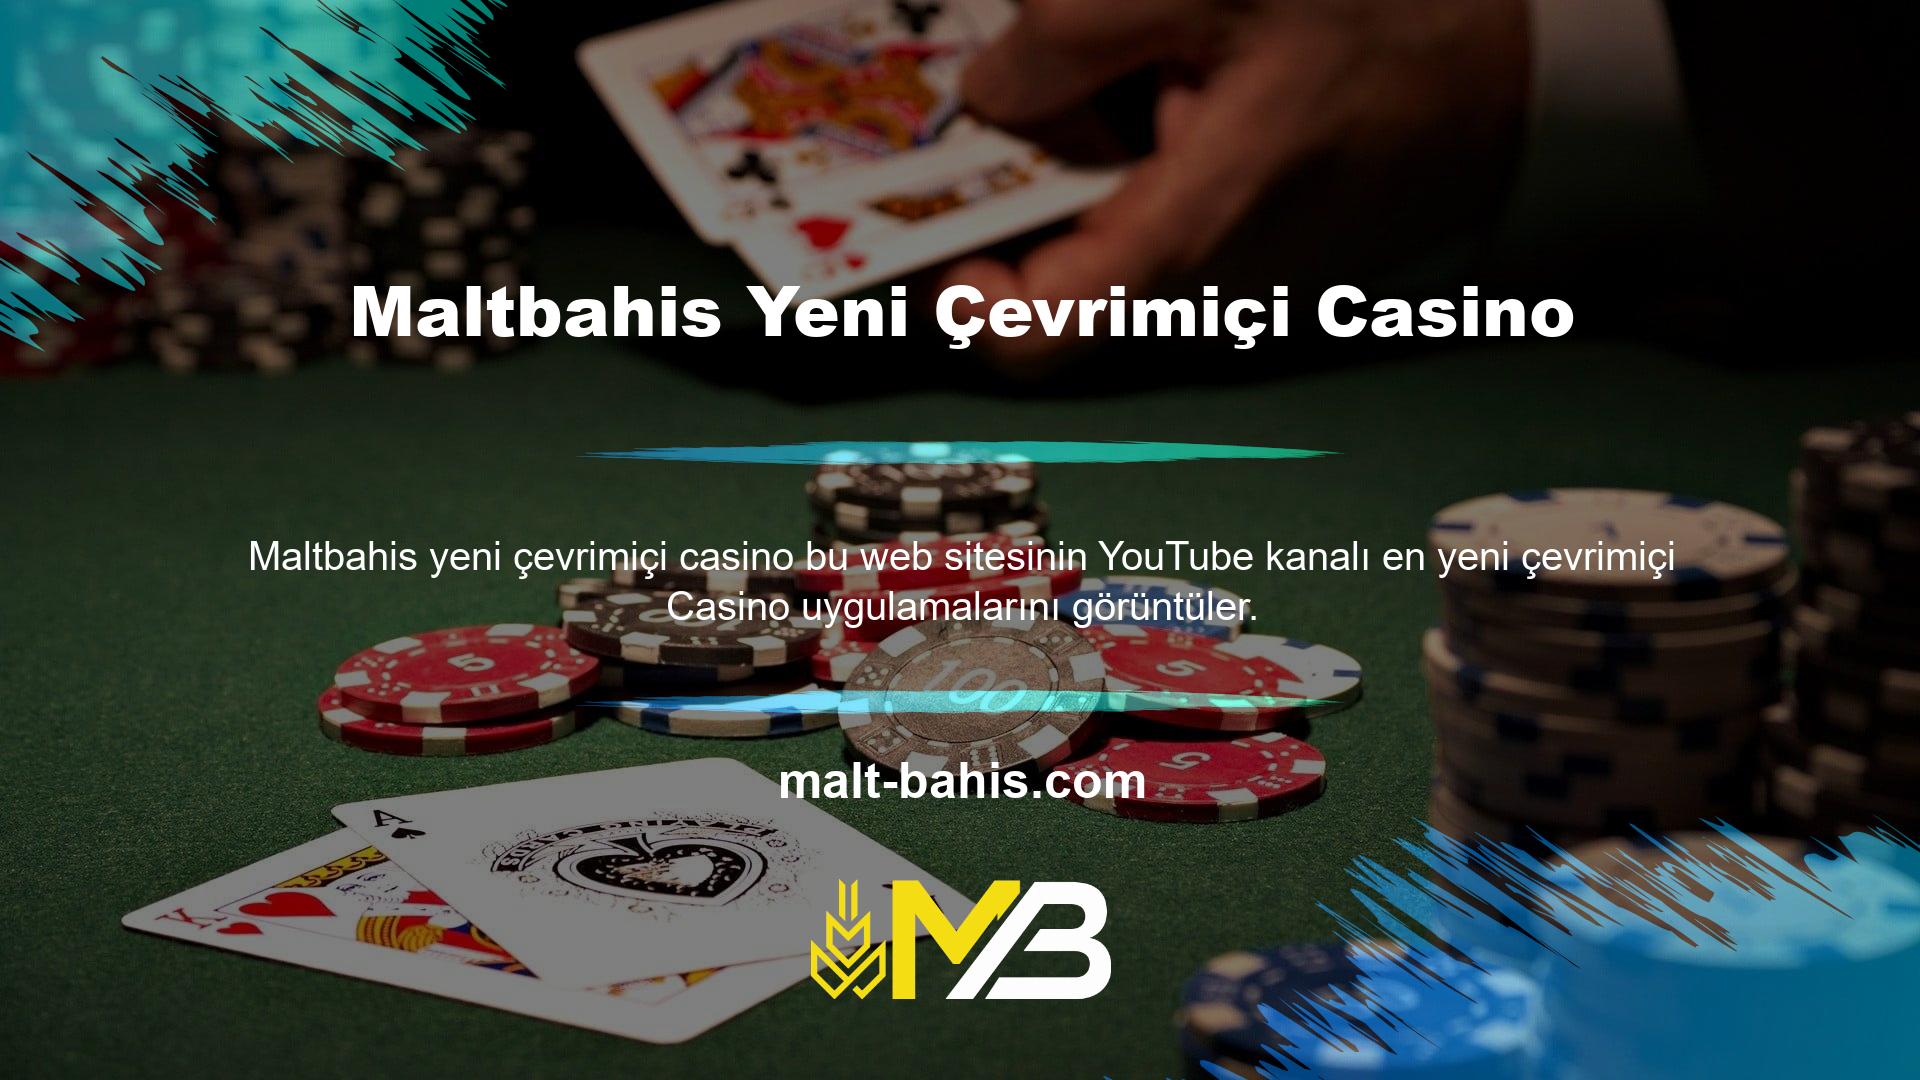 YouTube Casino, para yatırma ve finansal ticaret web siteleri hakkında genel ayrıntılar sunar